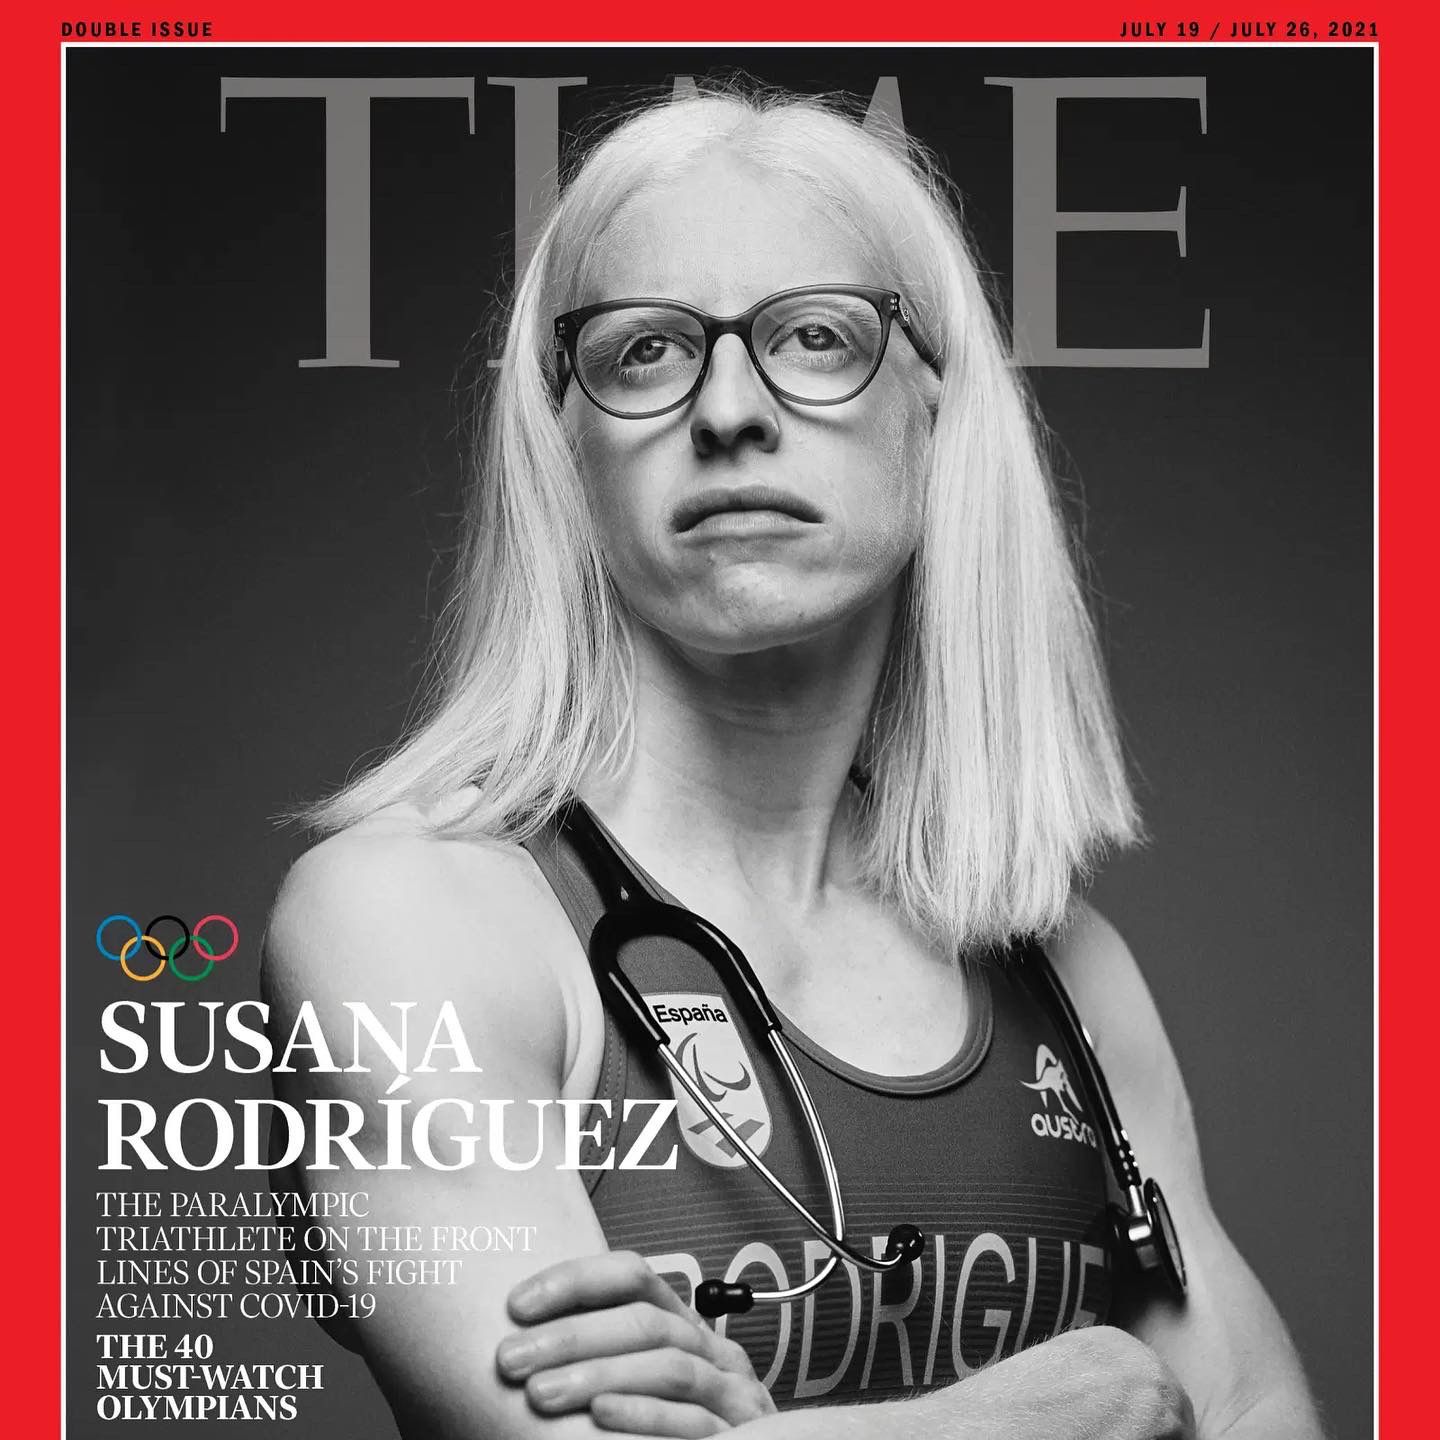 Susana: Portada de la revista "Time"